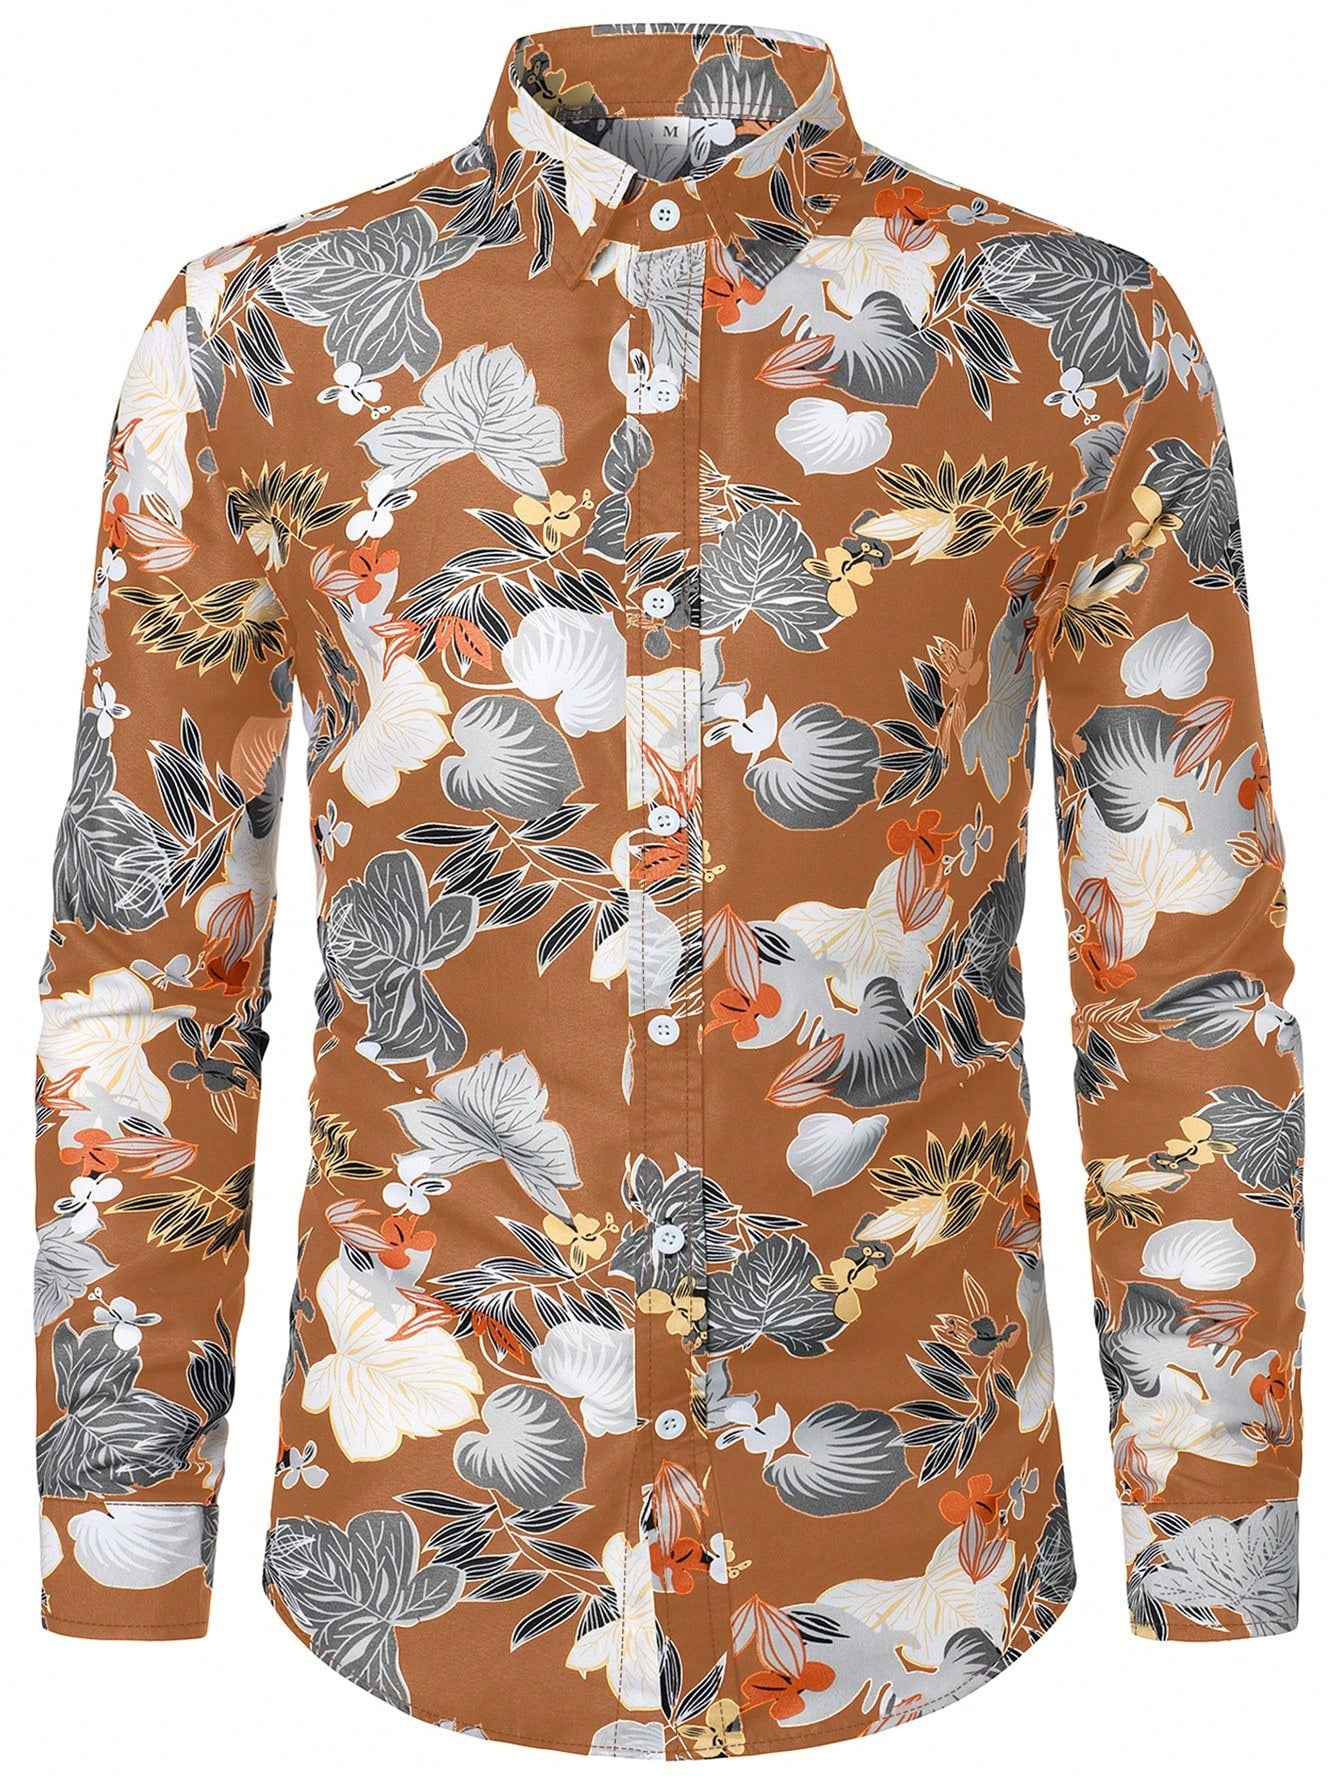 Men Tropical Print Button Up Shirt